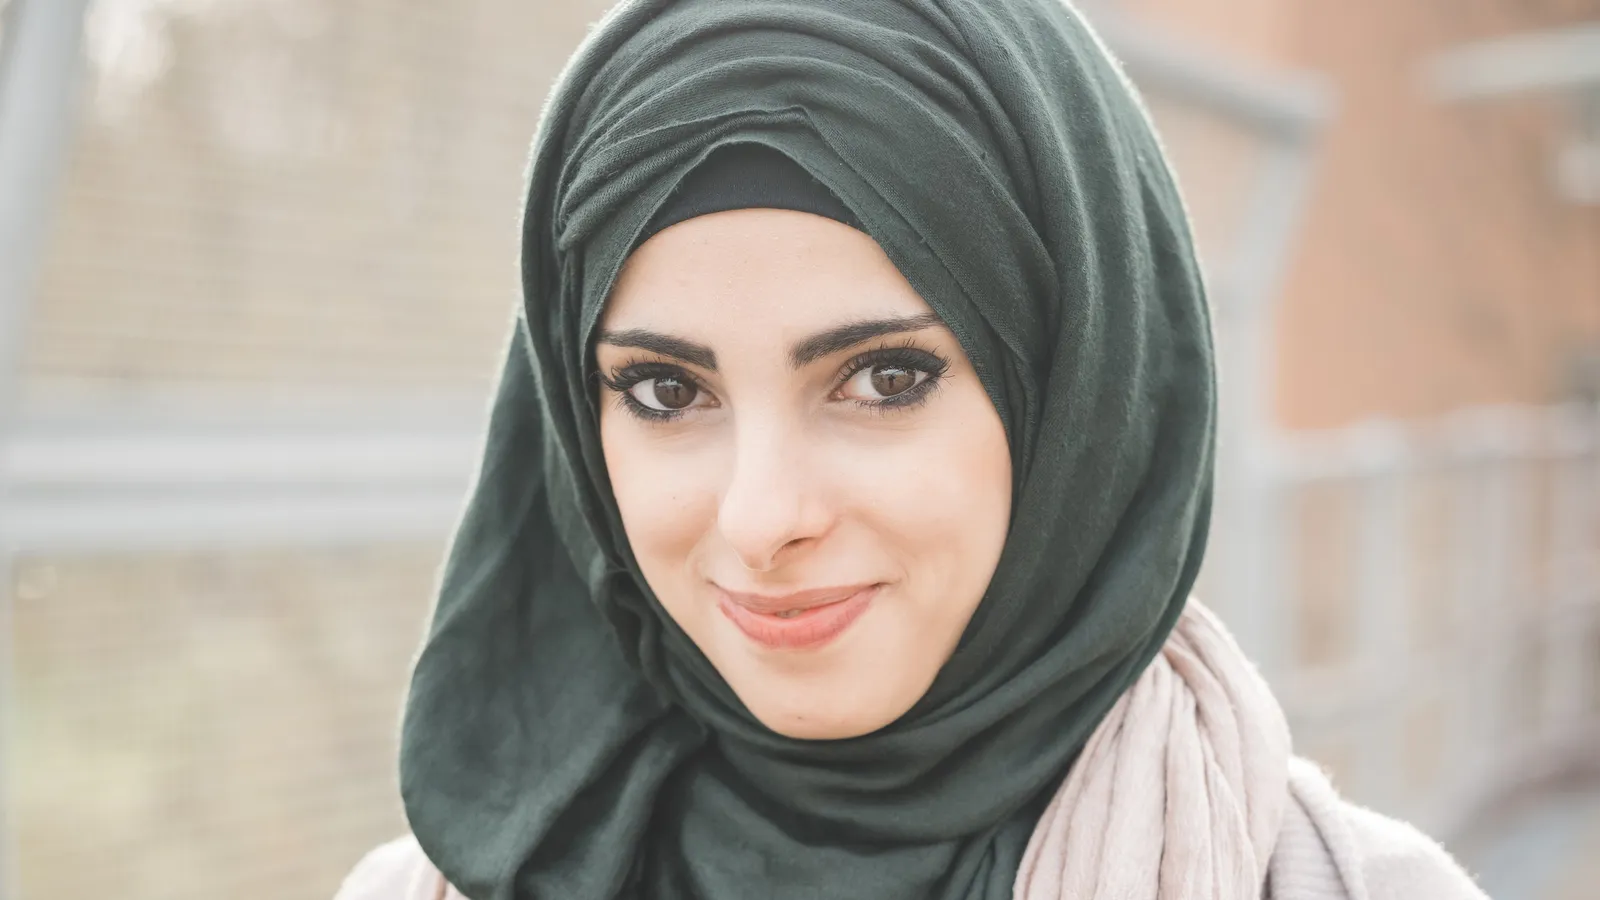 Cewek Perlu Tau, Ini 5 Masalah Rambut yang Biasa Timbul Saat Pakai Hijab